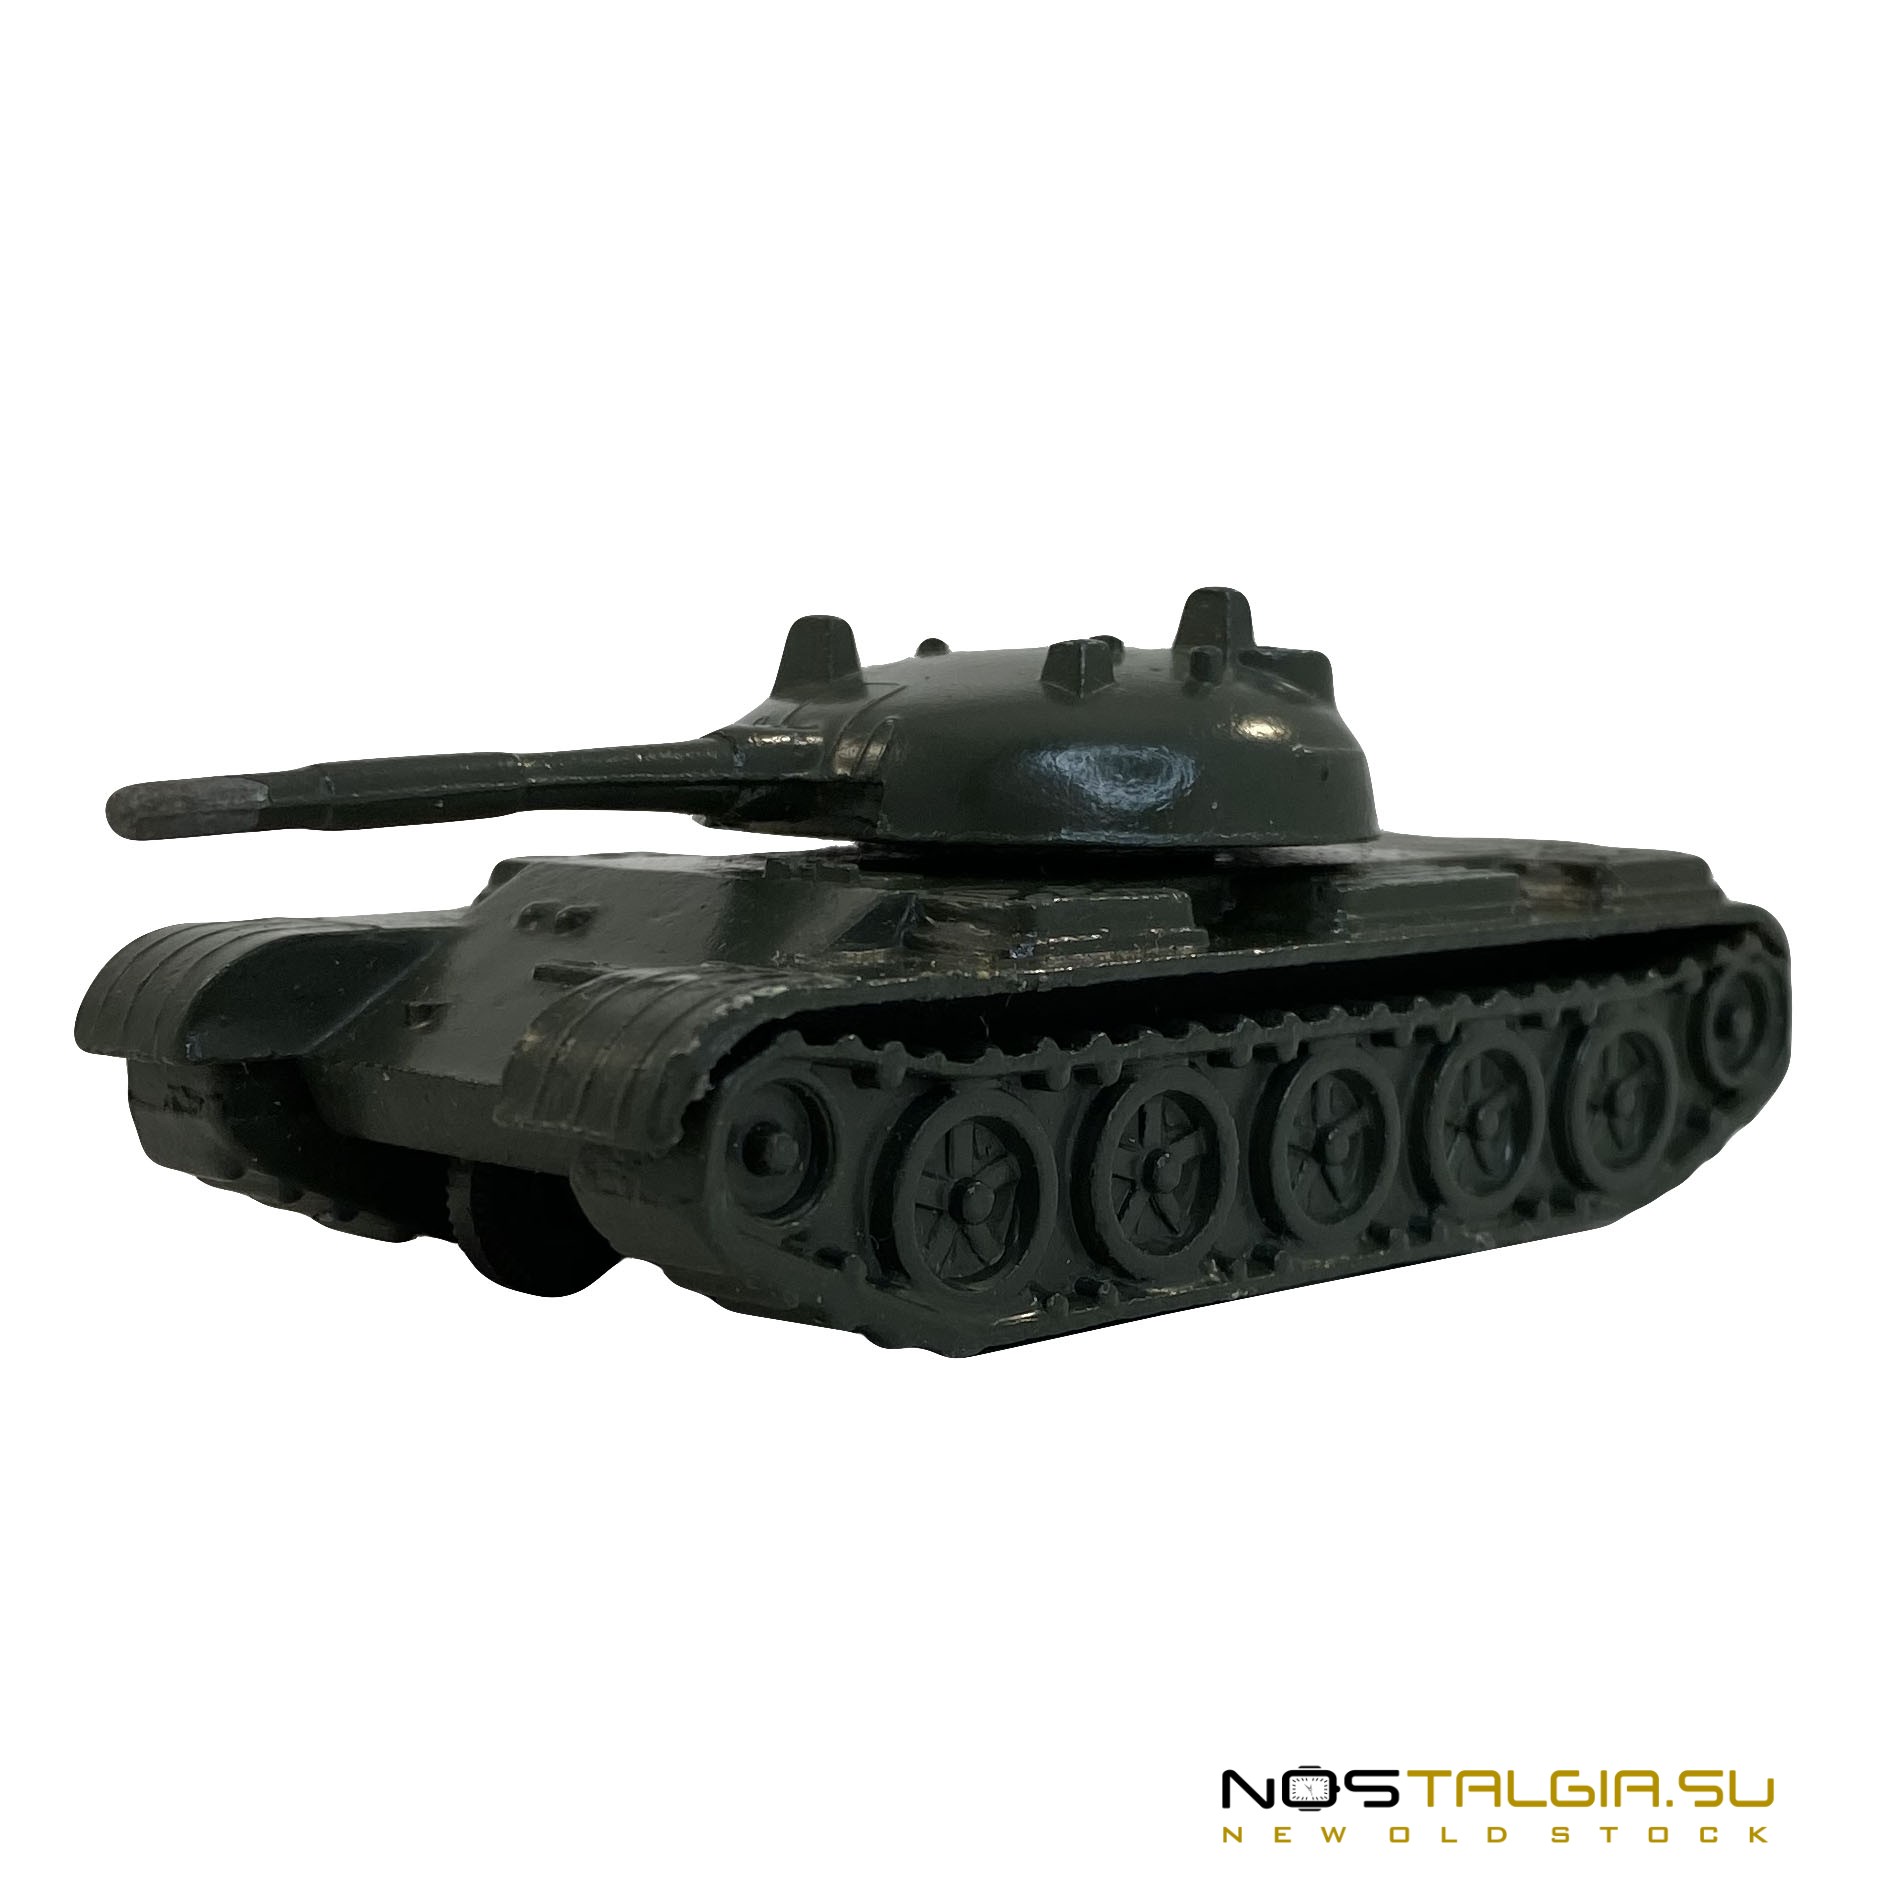 Масштабная копия модели "Танк Т-72", металлическая, состояние - идеальное, новая с хранения